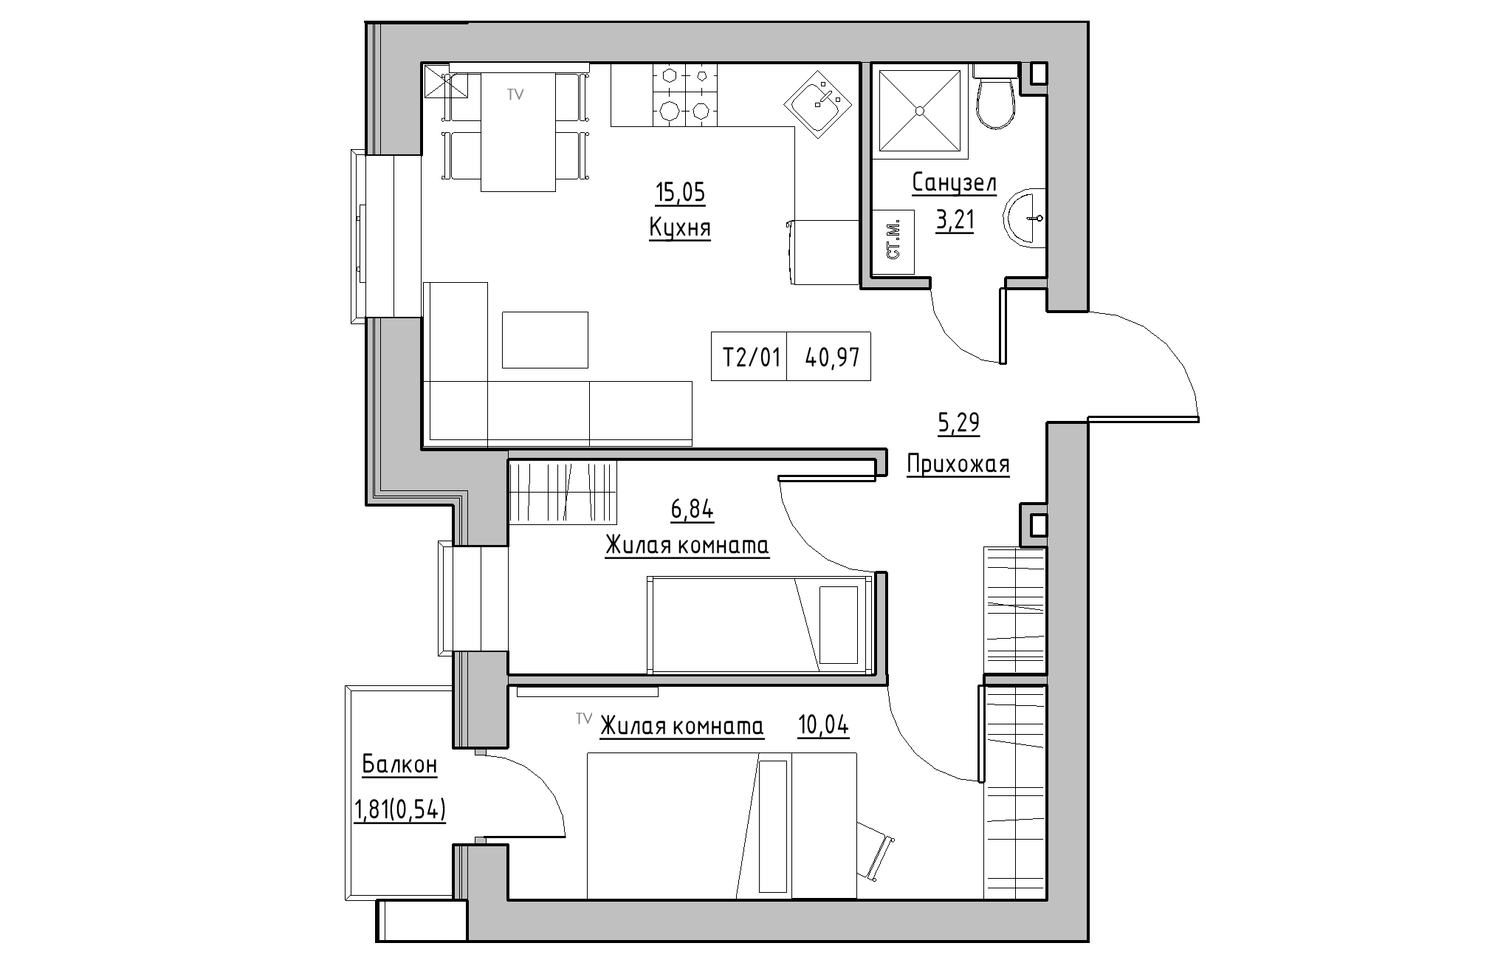 Планування 2-к квартира площею 40.97м2, KS-013-02/0004.